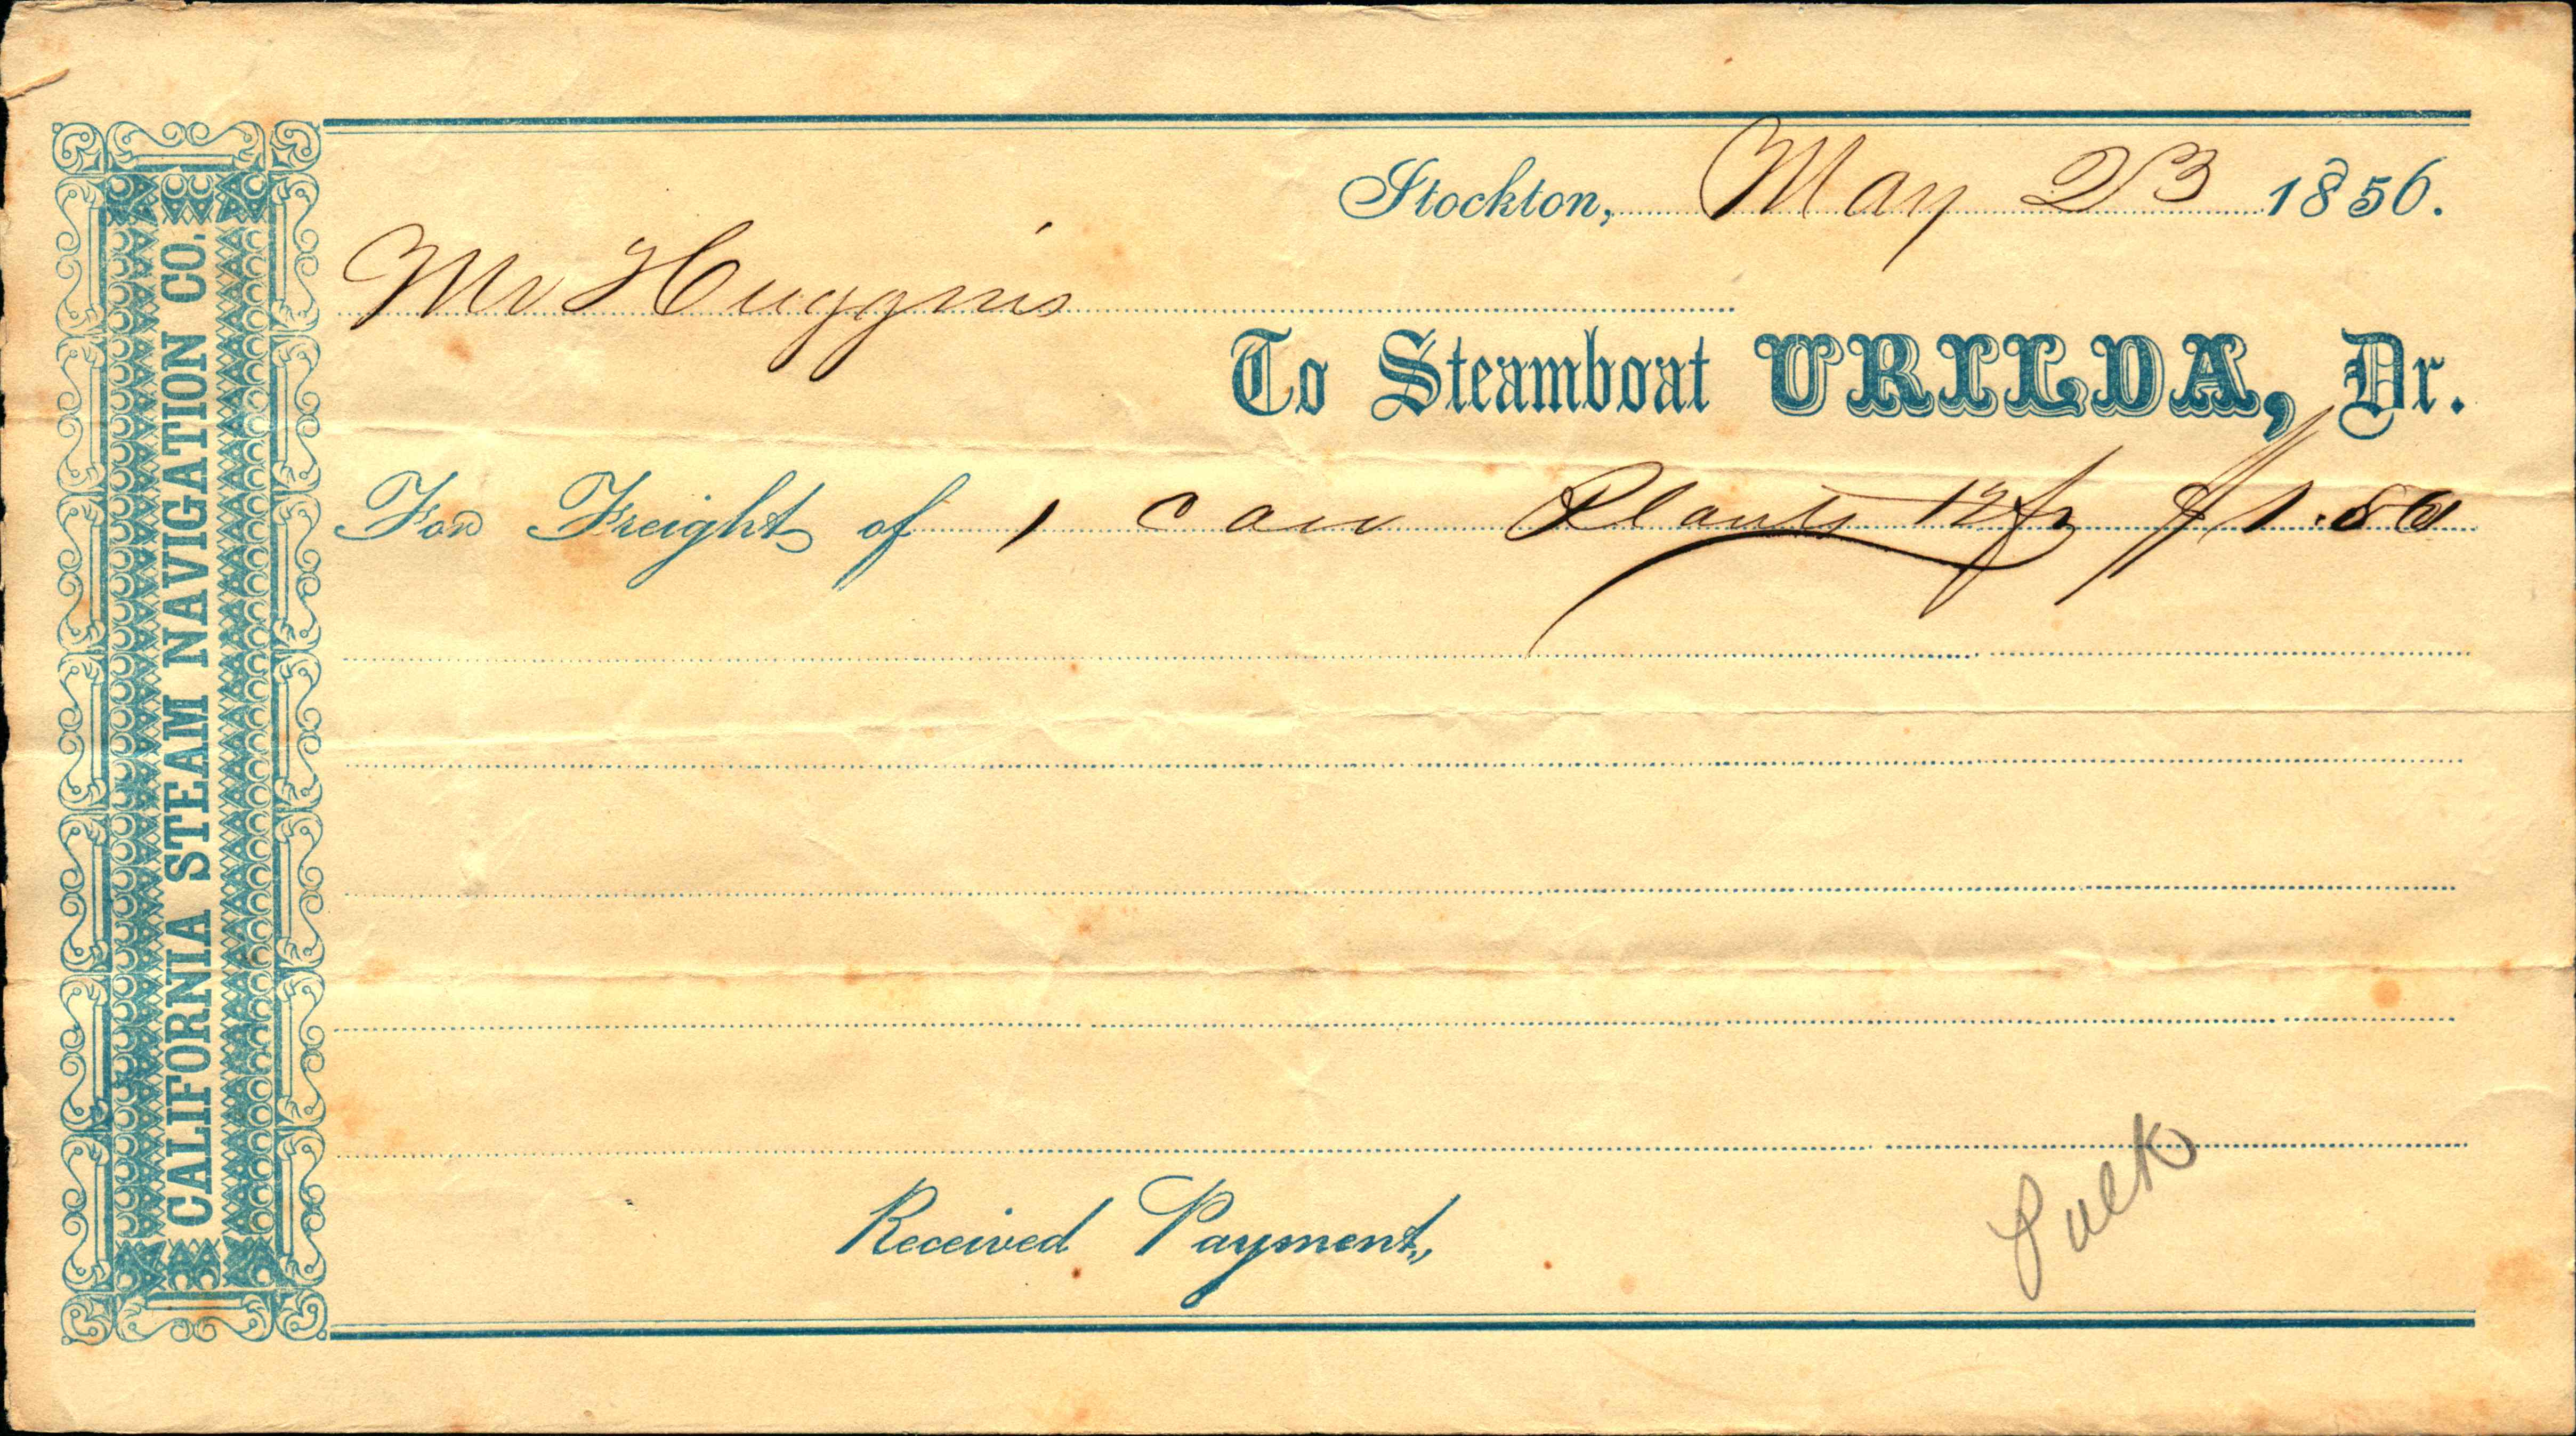 Steamboat urilda freight receipt